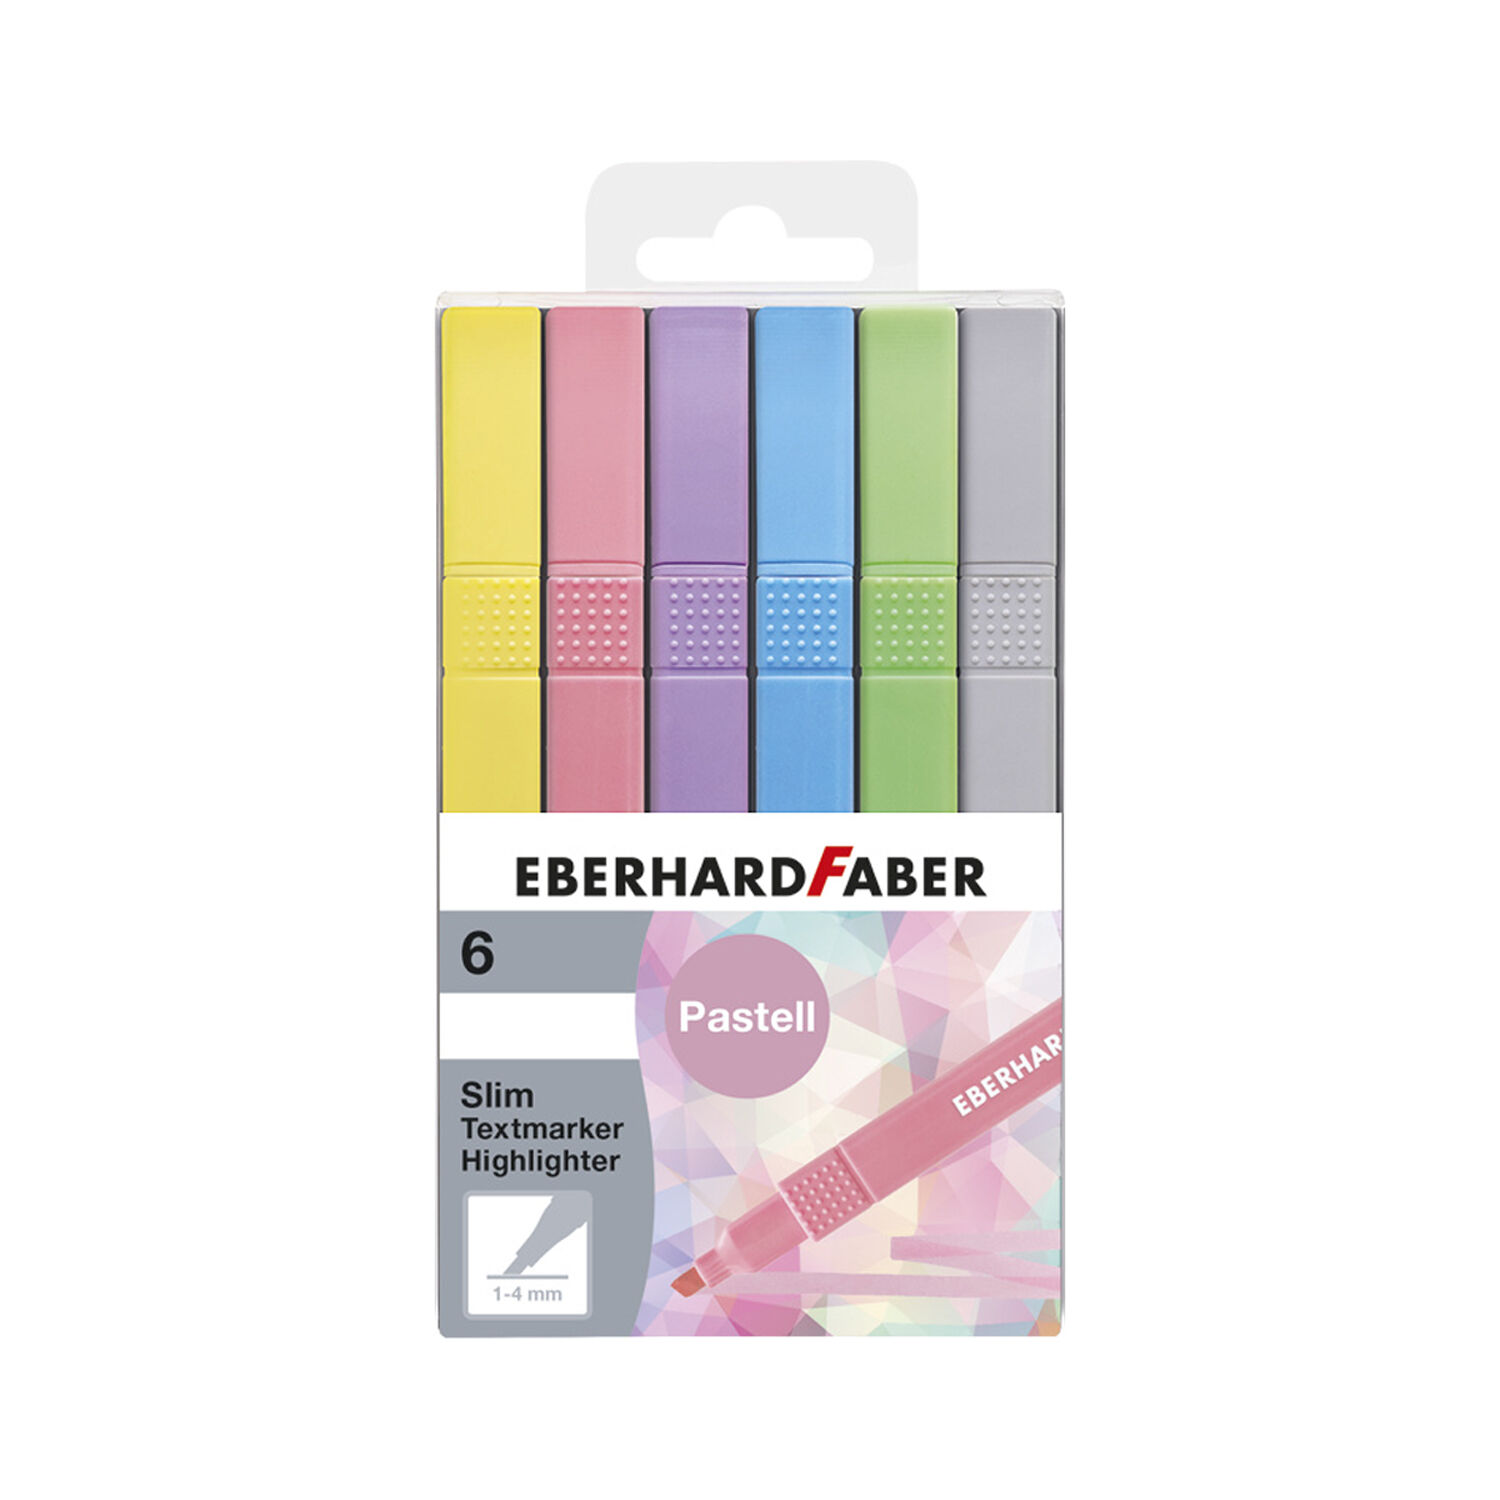 NEU EberhardFaber Textmarker / Highlighter Set Pastell, 6 Farben